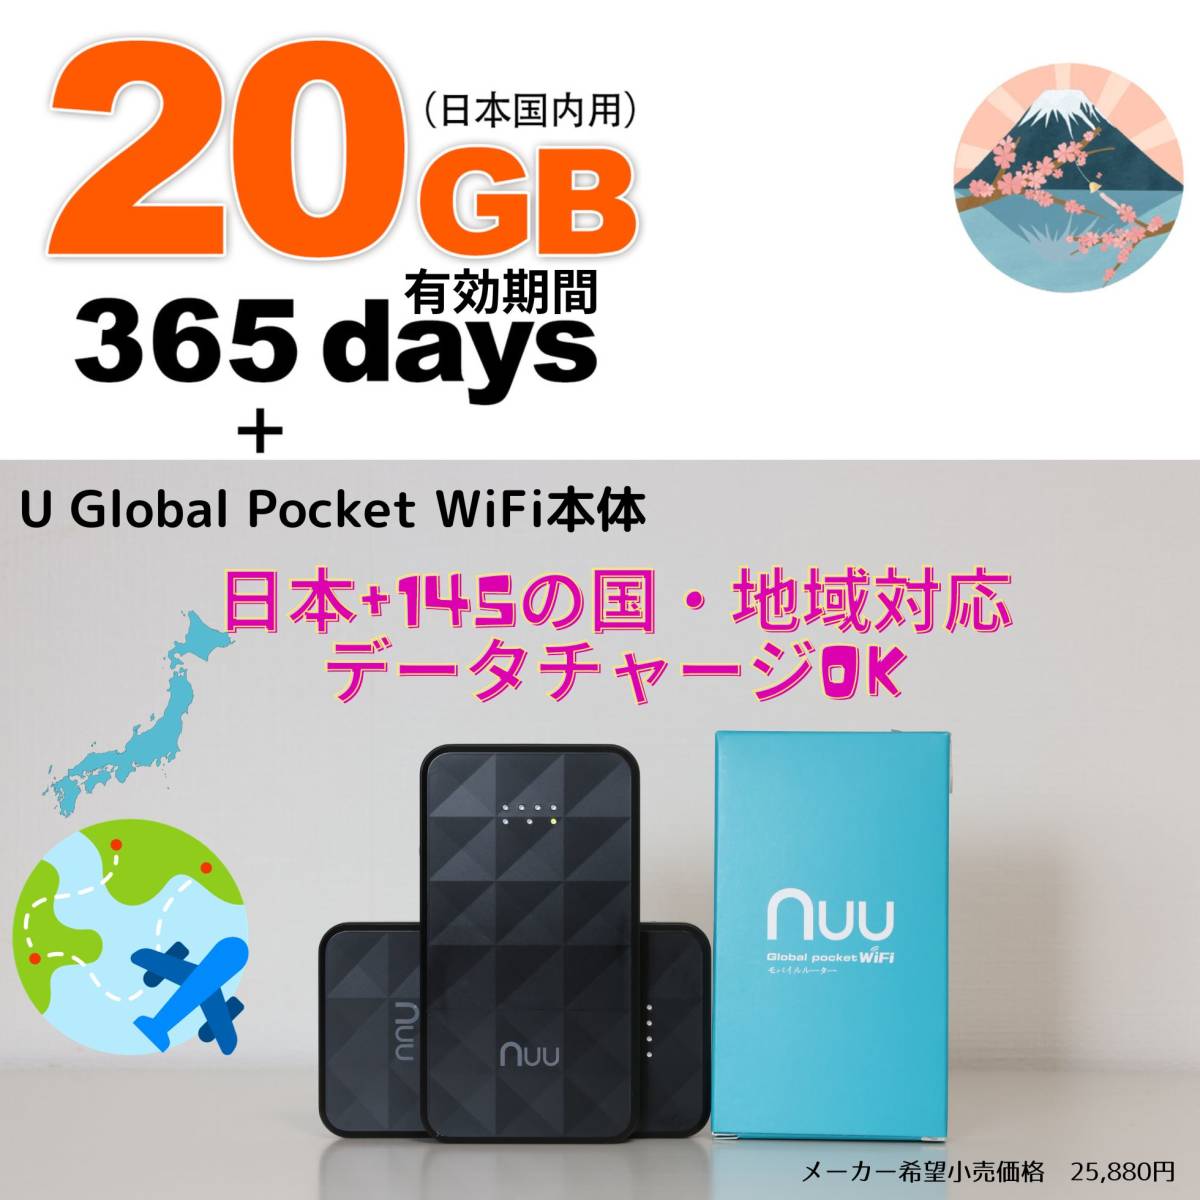 【キャンペーン中】【新品】pocket WIFI ルーター + 日本国内超大容量20GB ギガセット付き 1年間使用OK　海外データも購入可能